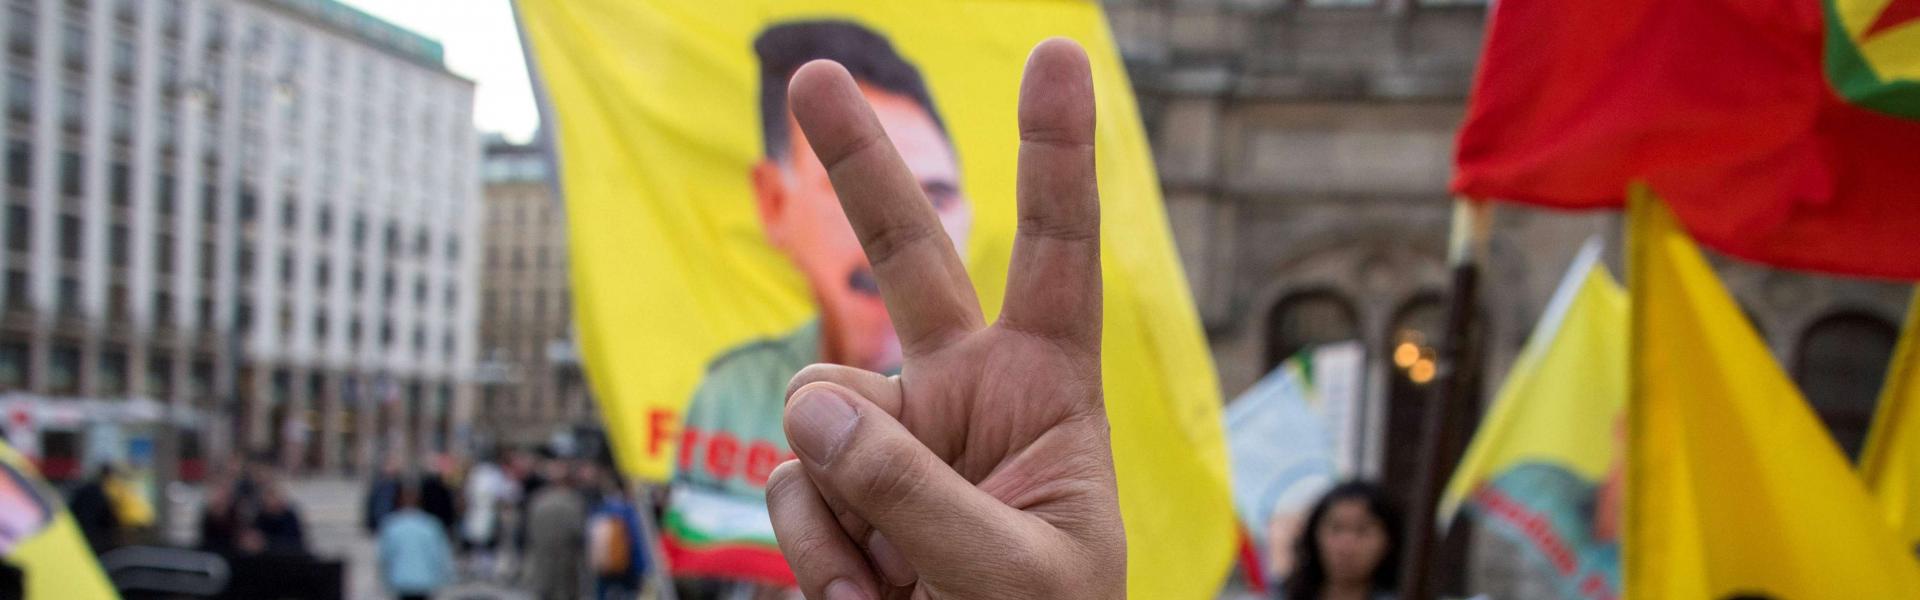 Belgian court: PKK not a terrorist organization 2